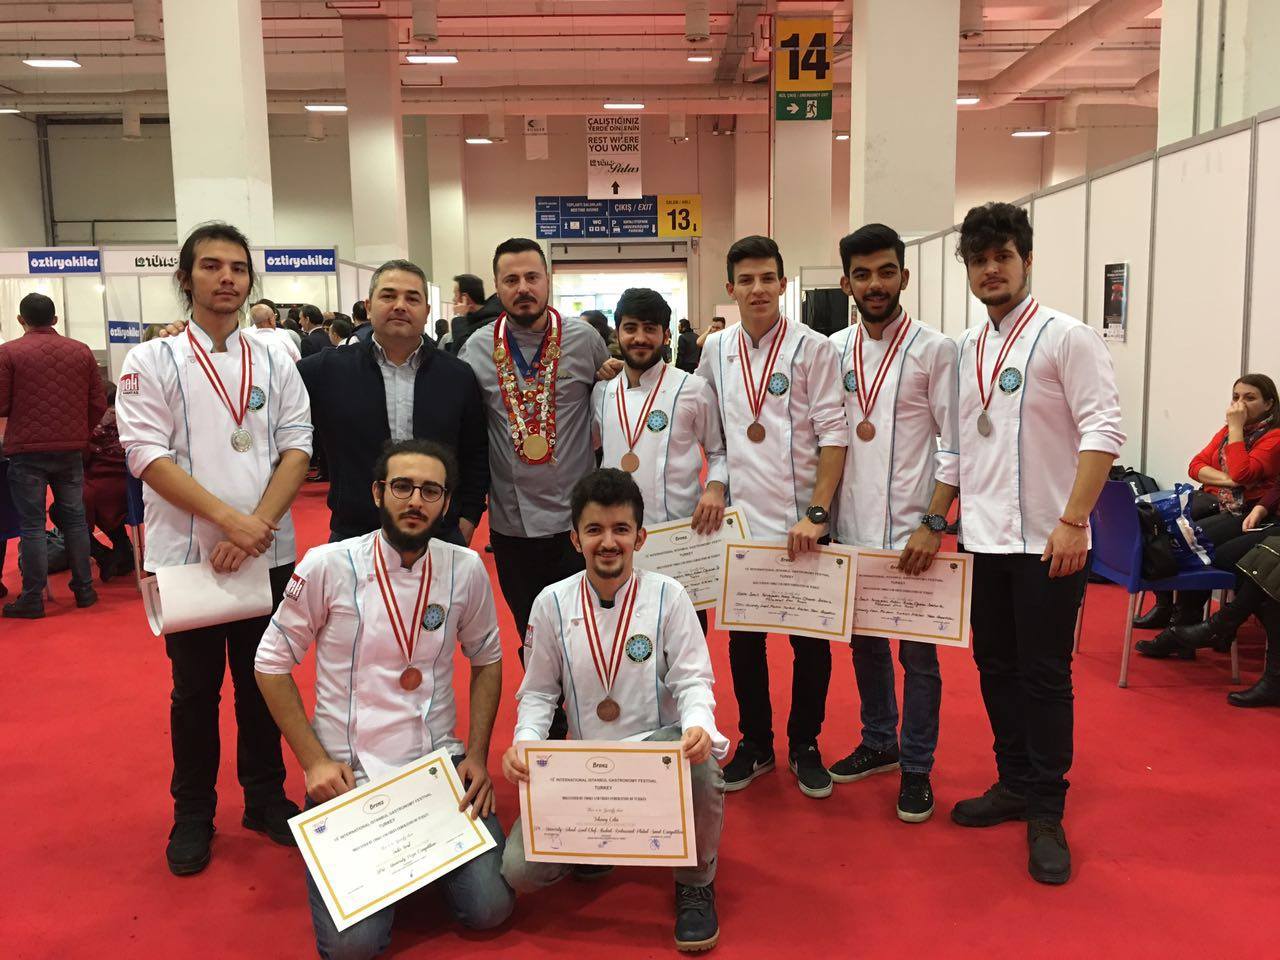  Üniversiteli aşçılar Altın Kepçe Topluluğu  “Mutfak Günleri”nden madalyalarla döndü 